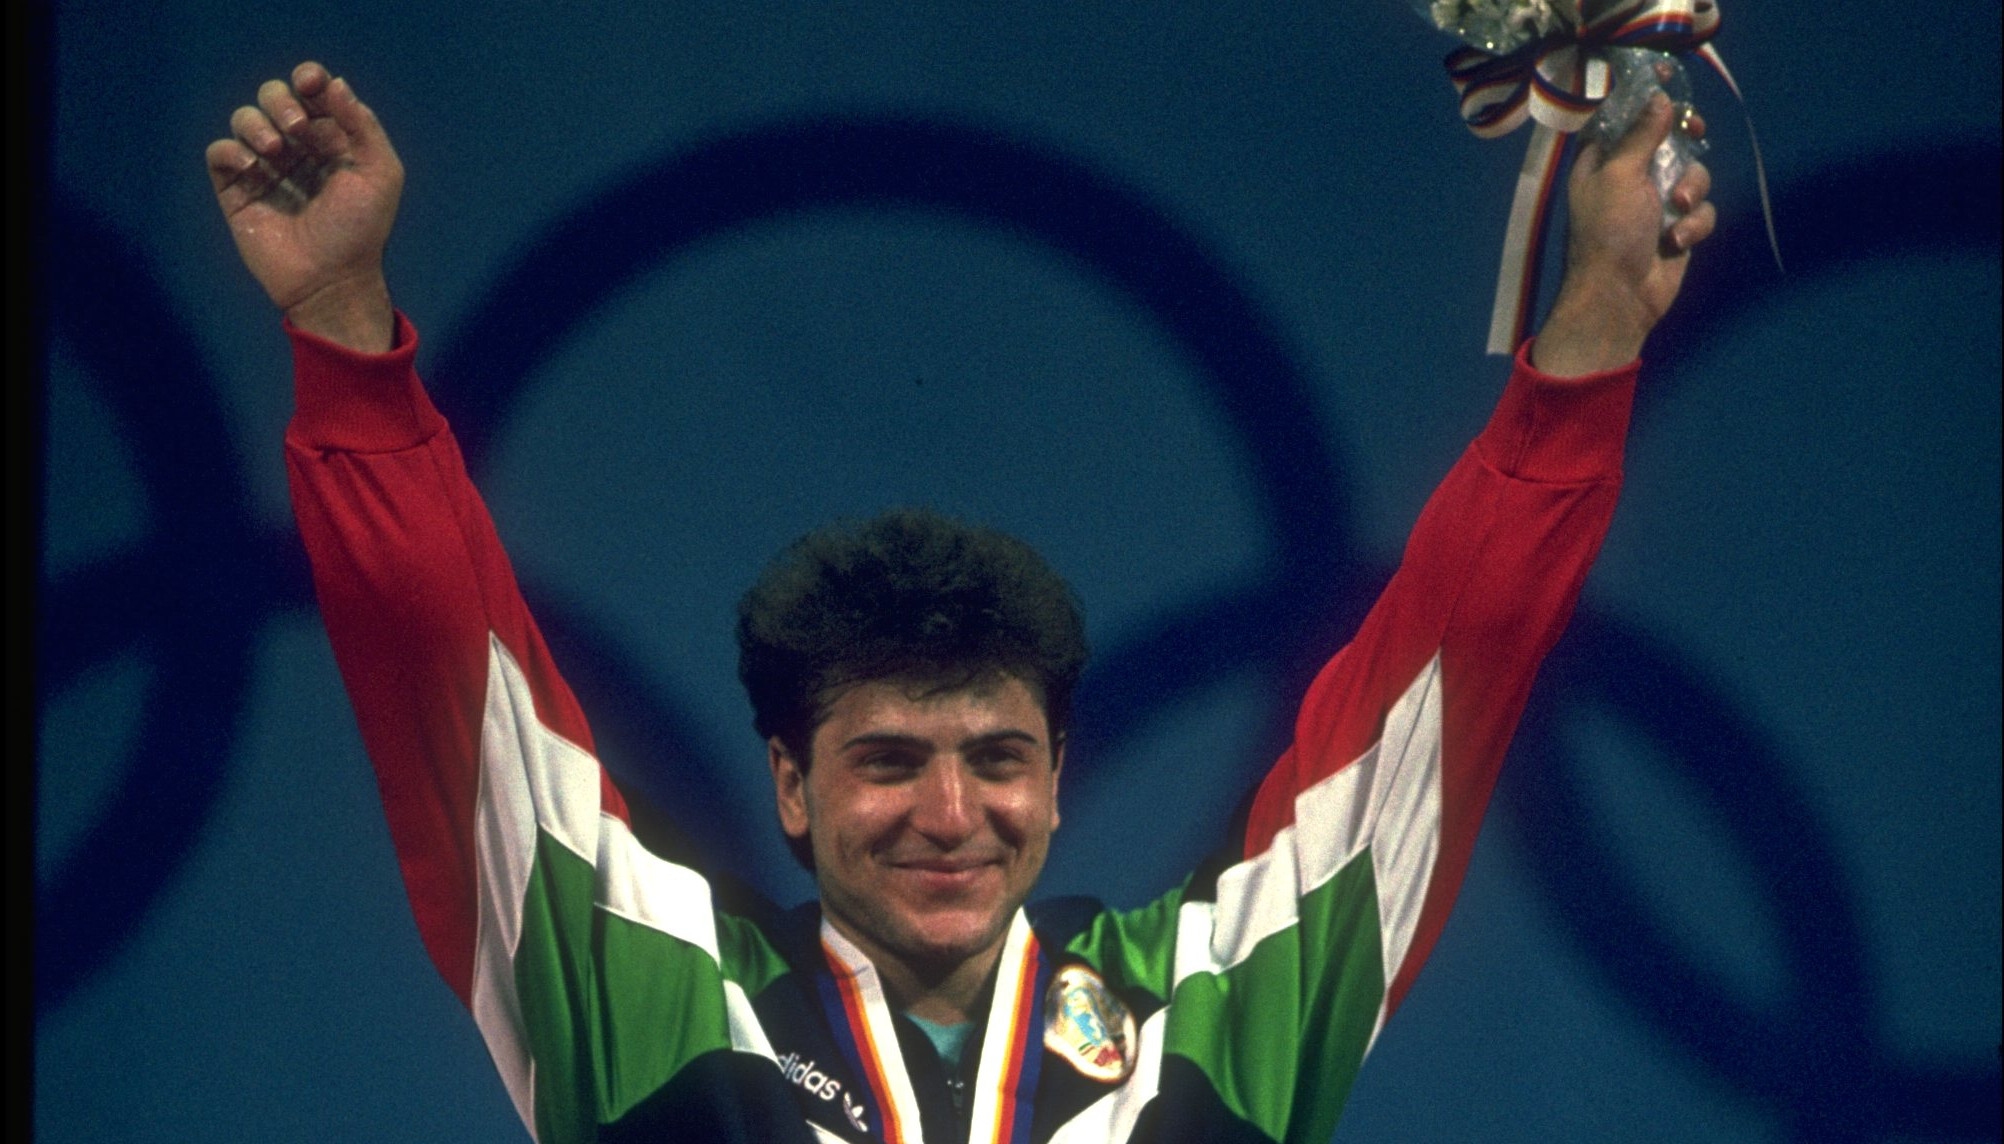 Една от олимпийските шампиони на България Борислав Гидиков празнува